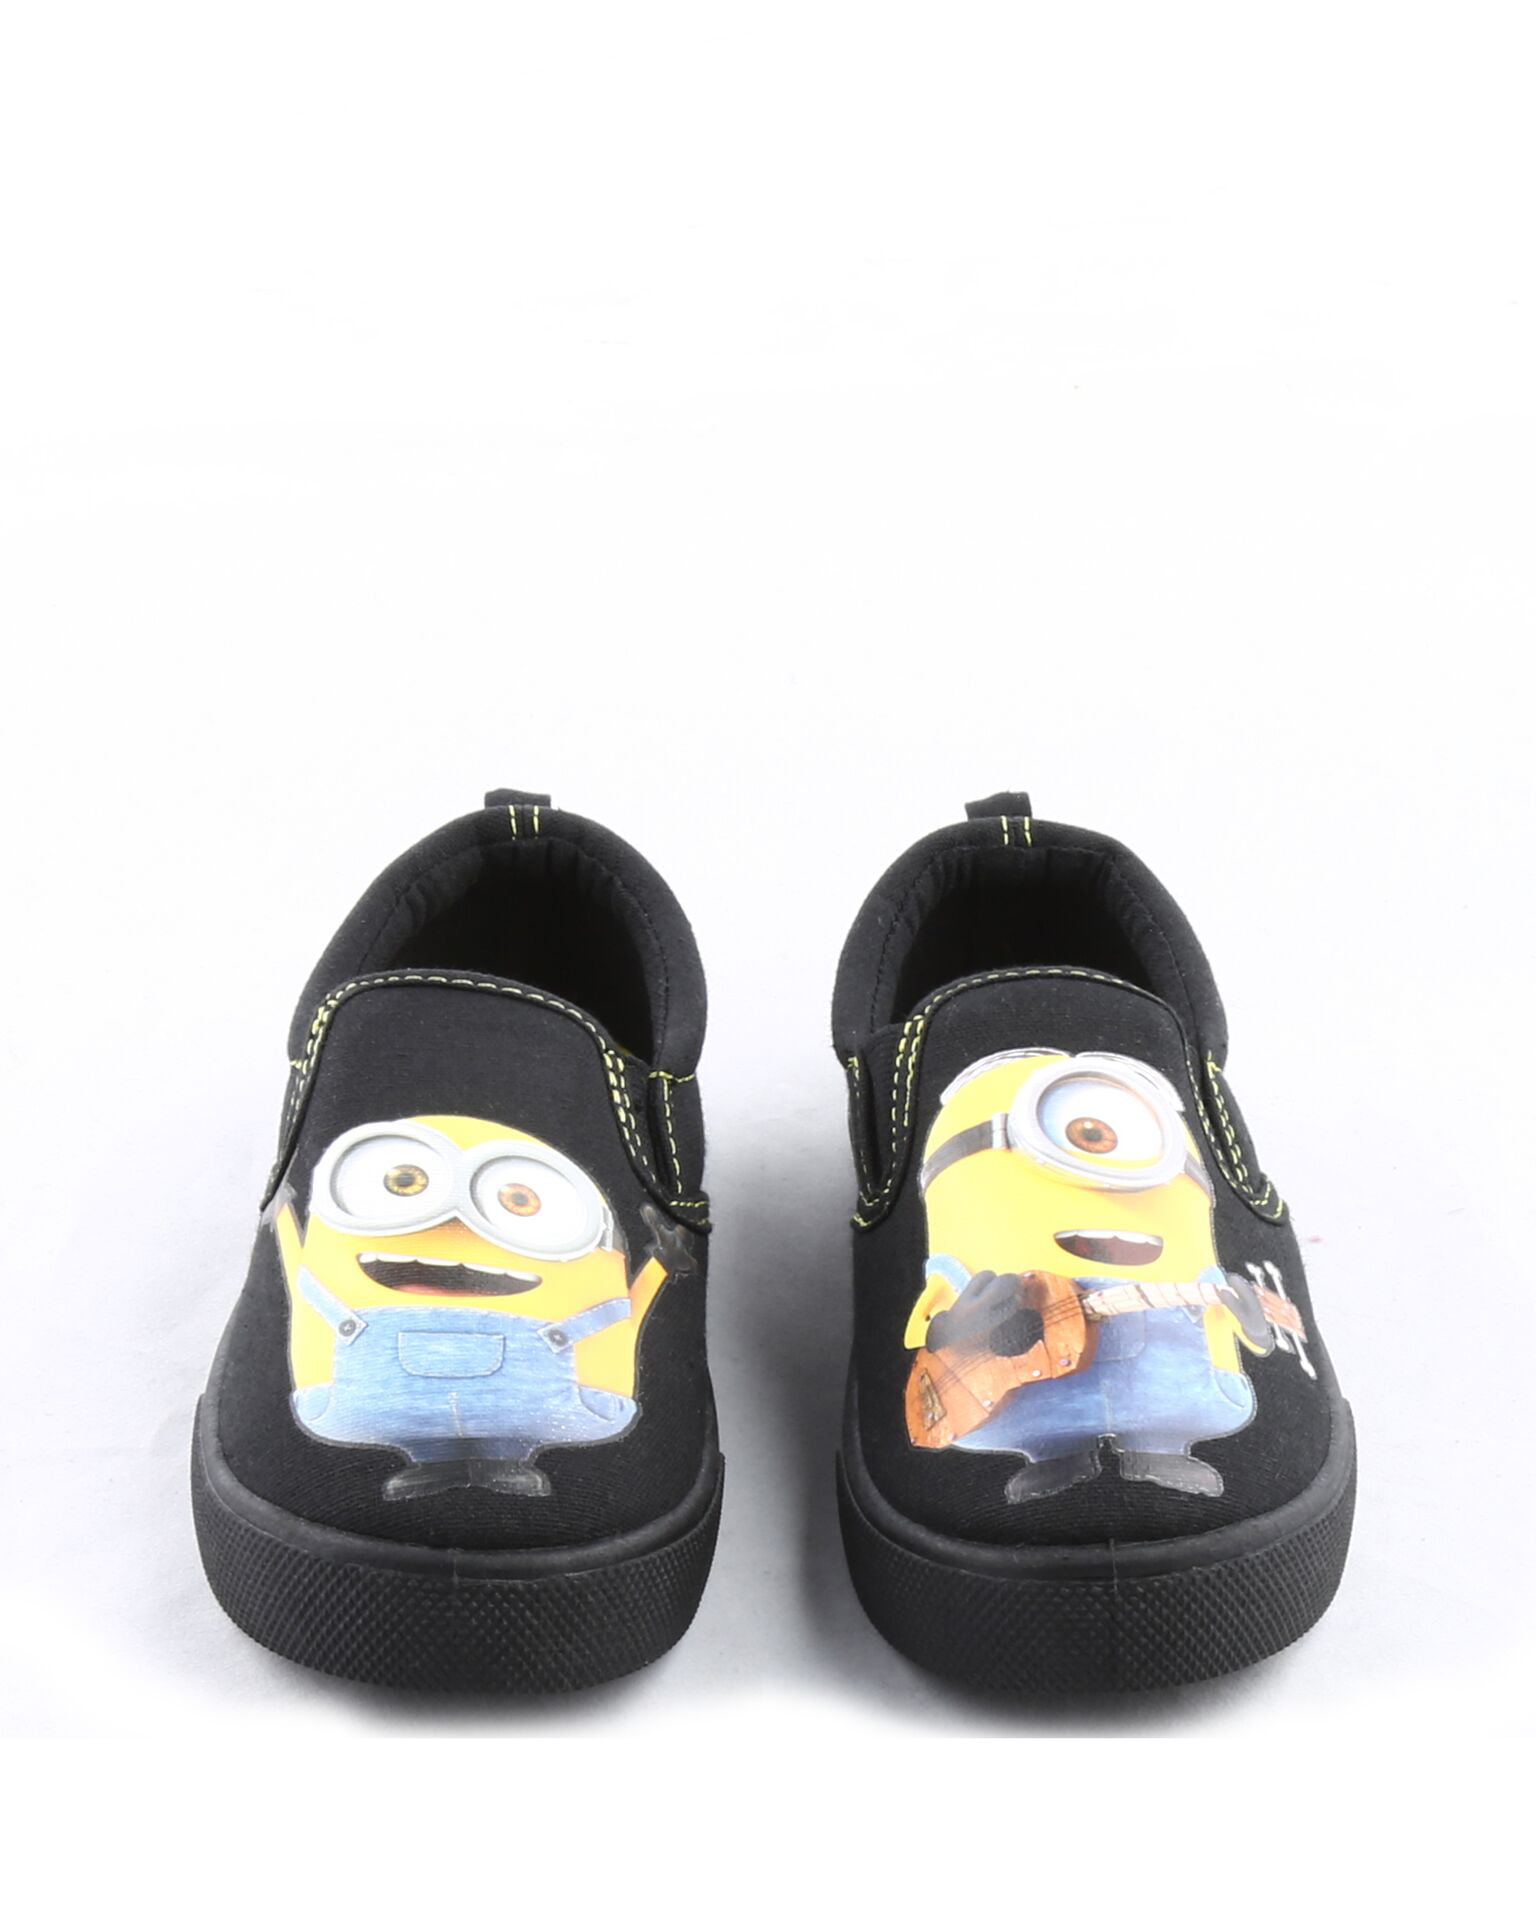 minion slippers walmart